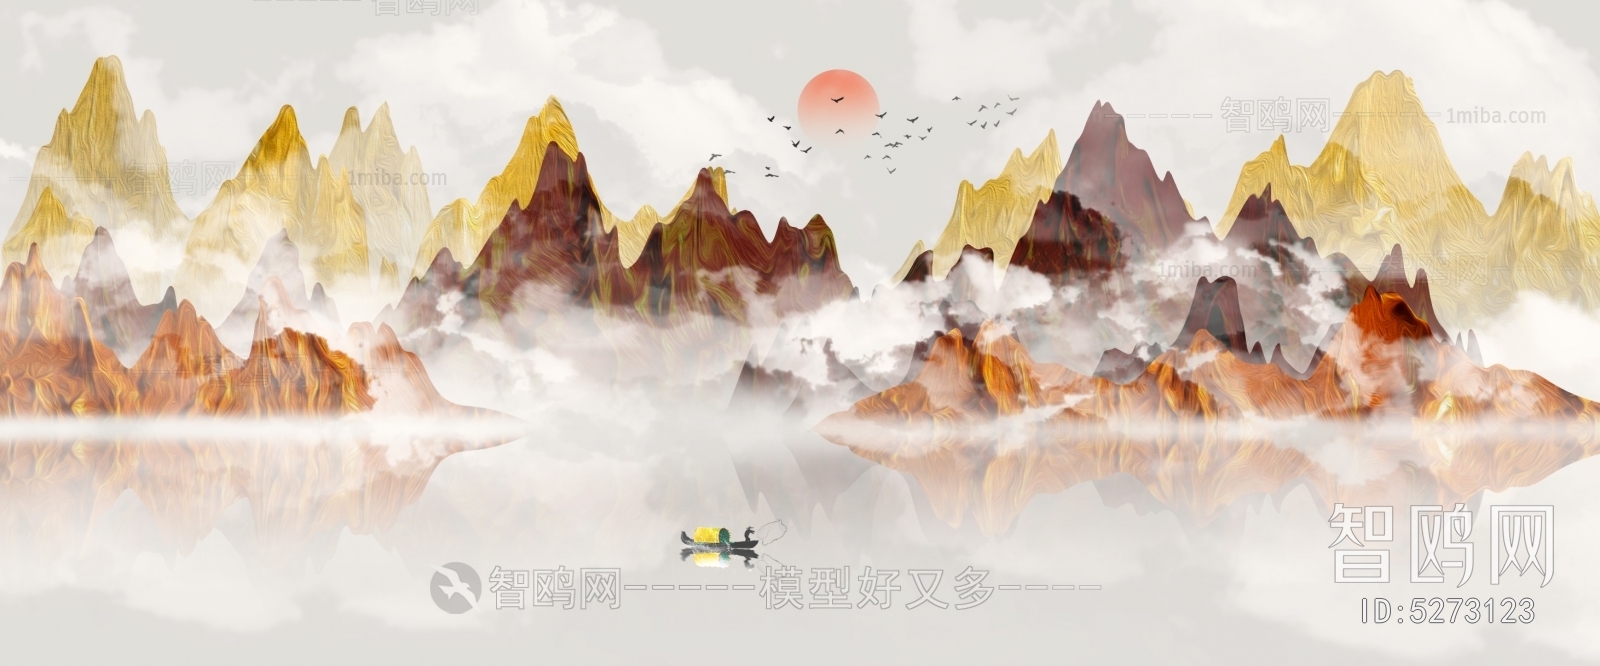 中国风意境水墨山水画中式壁纸